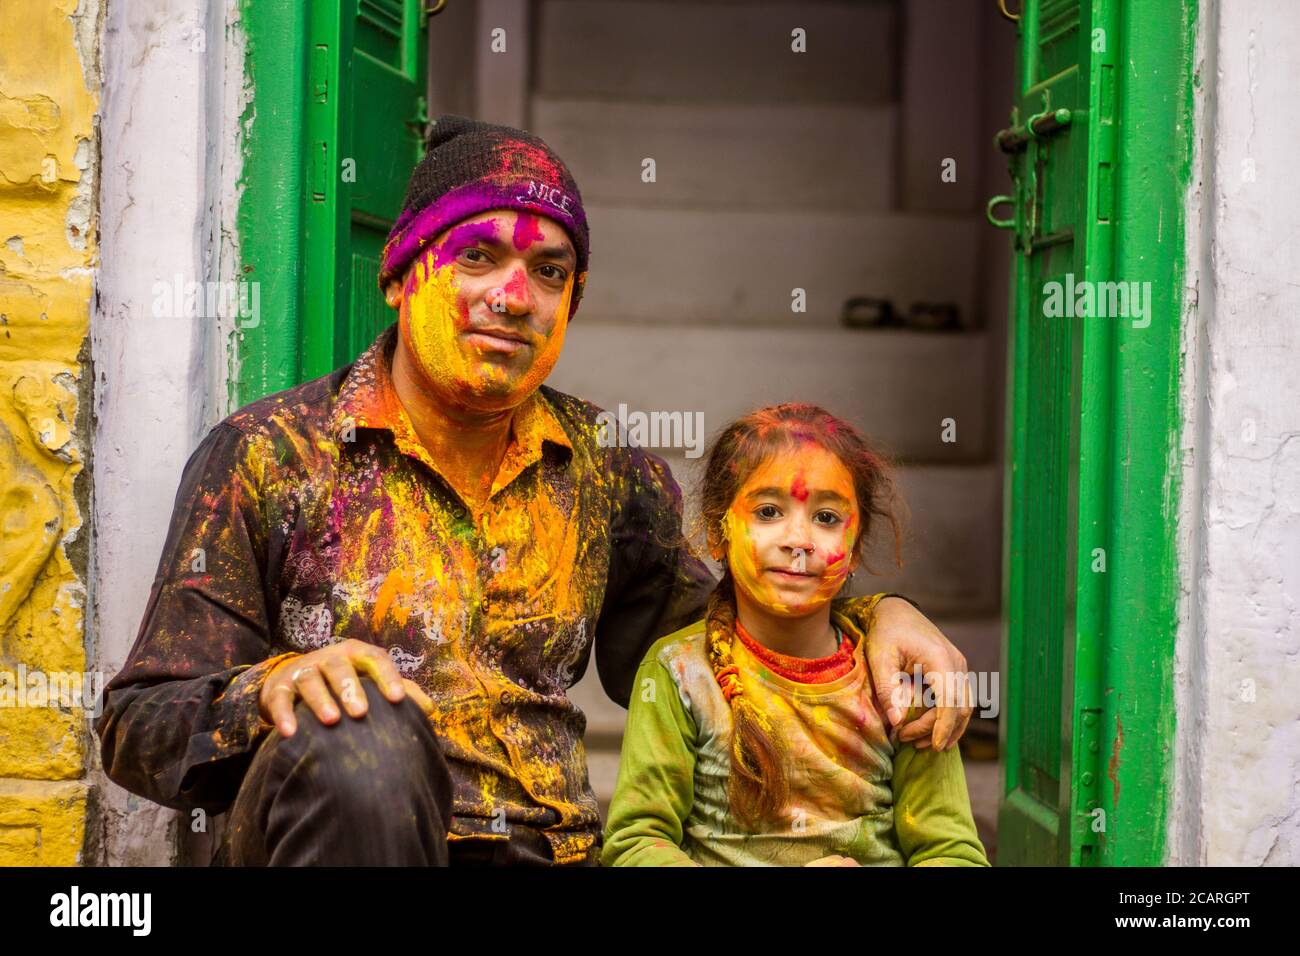 Holi Festival, celebrato a Udaipur, marzo 2020. Gli indù celebrano l'inizio della Primavera, usando la polvere colorata per diffondersi tra loro Foto Stock